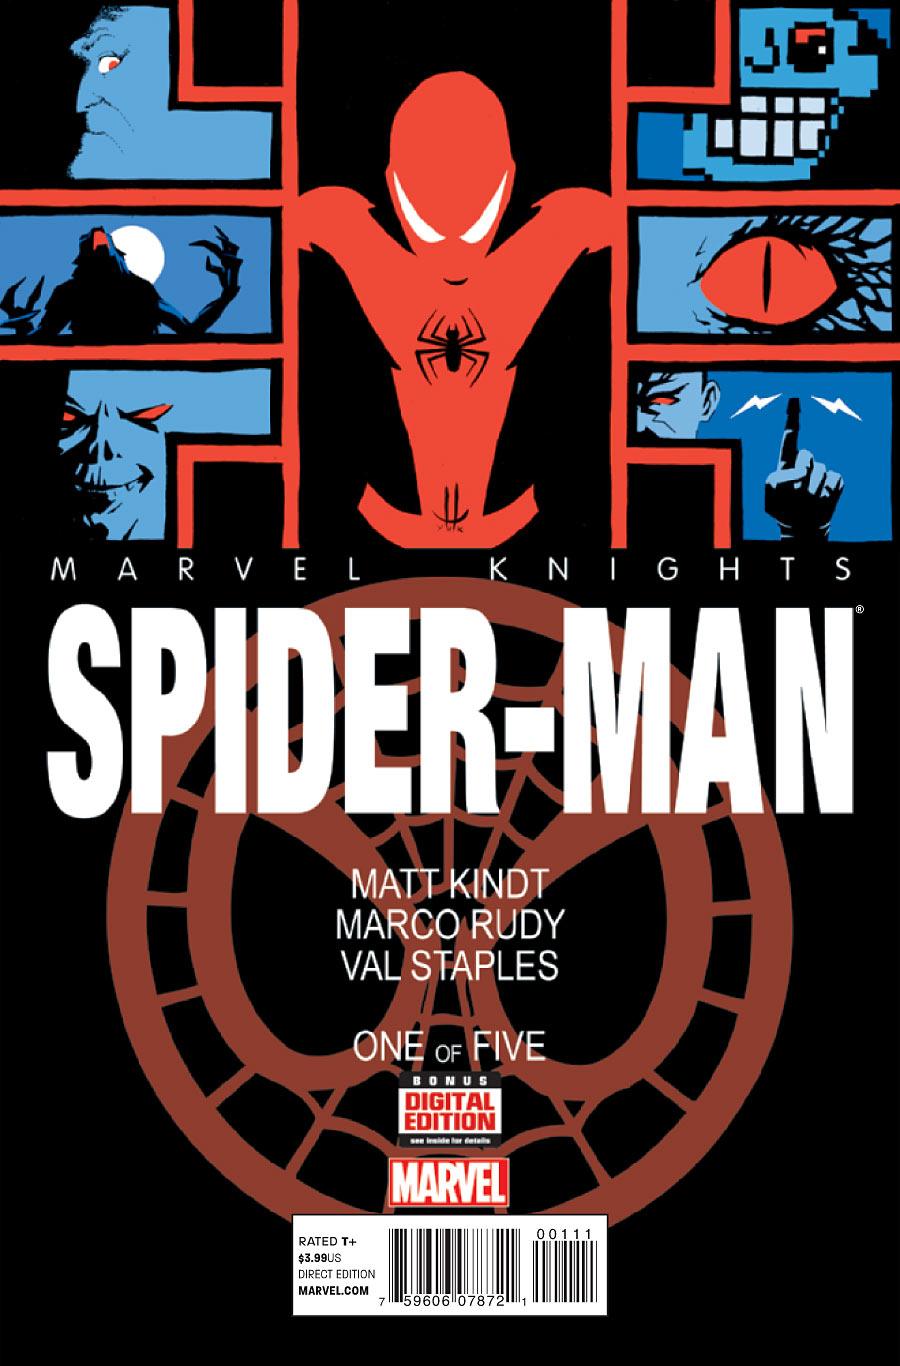 Marvel Knights: Spider-Man Vol. 2 #1